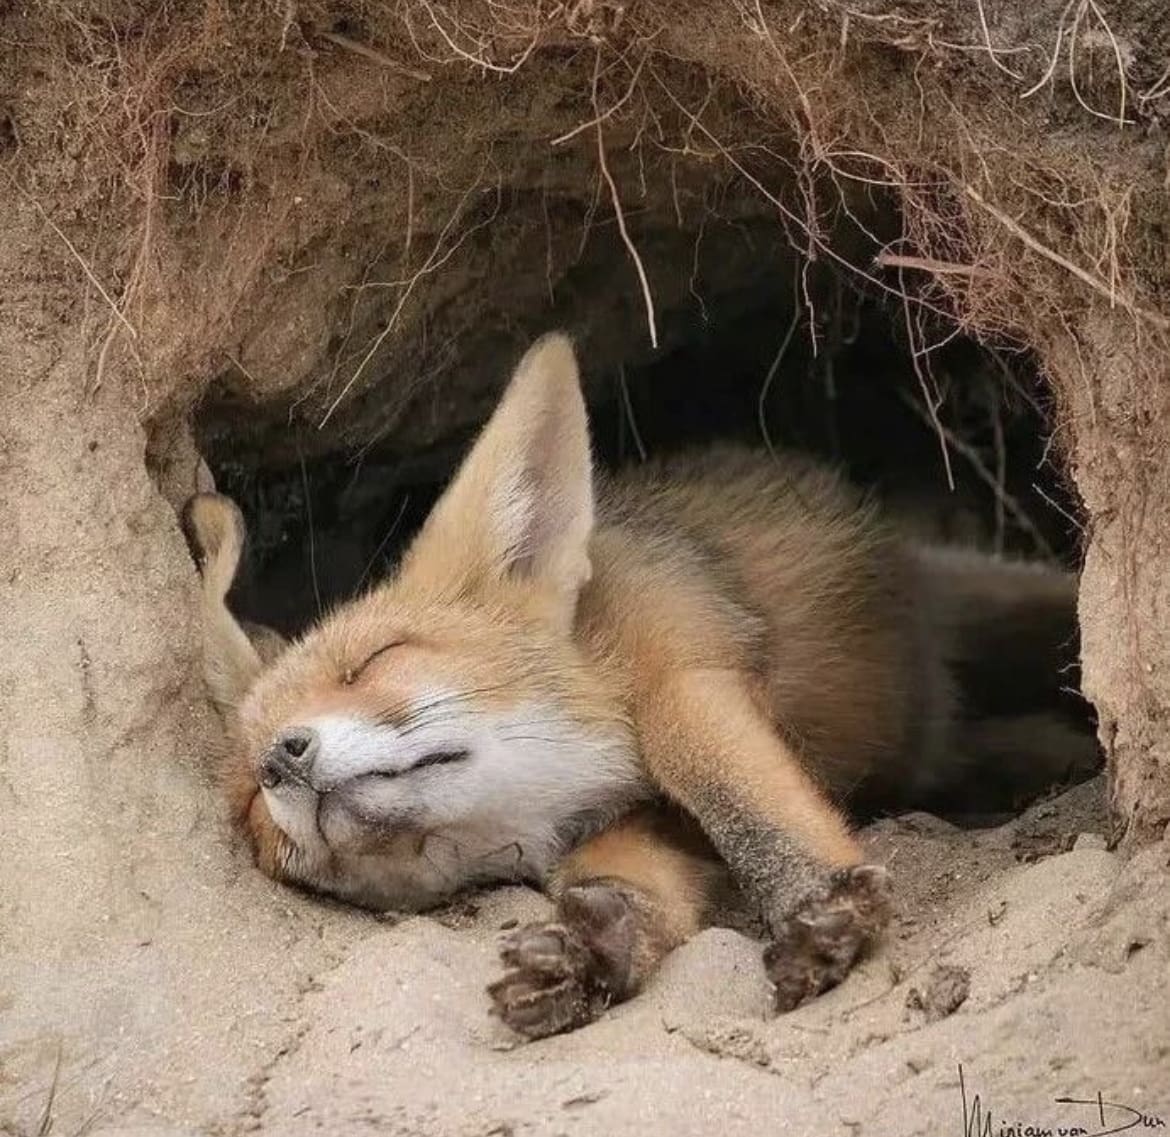 Fennec fox sleeping in a burrow